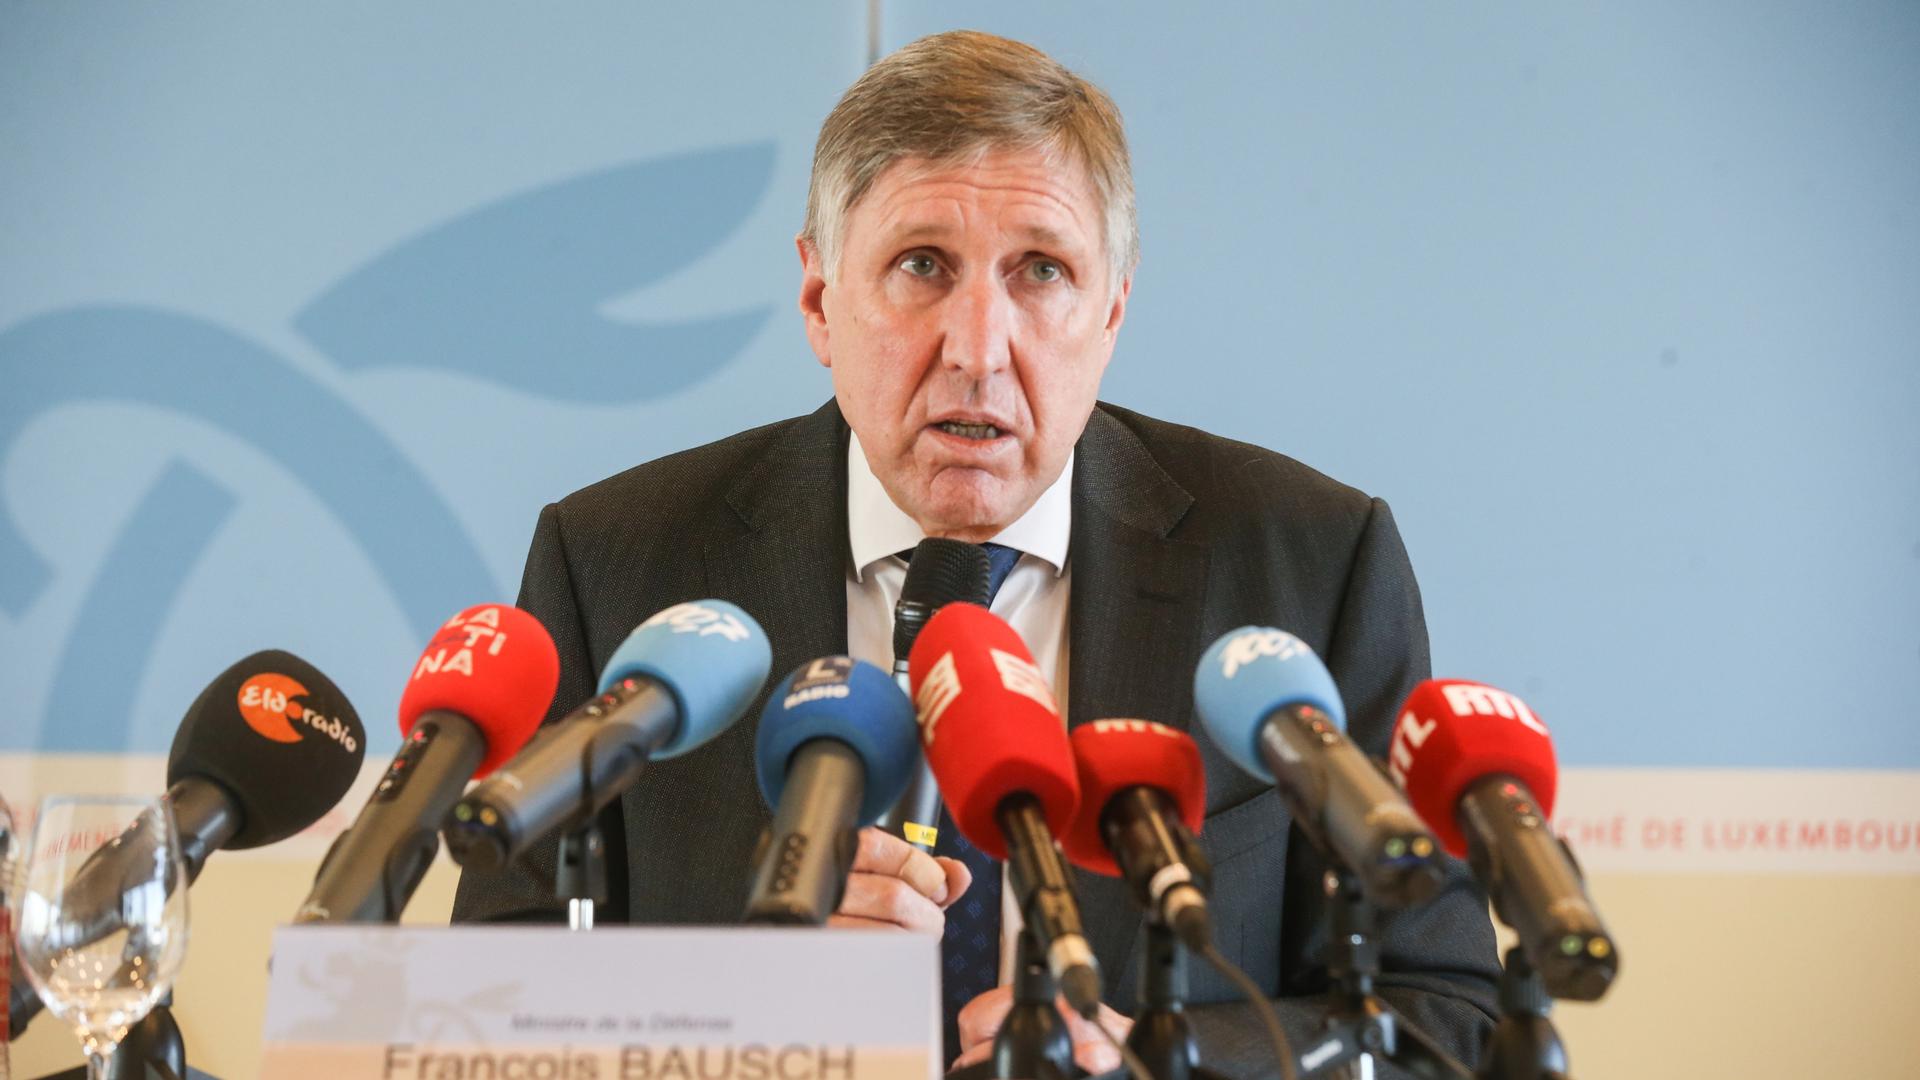 François Bausch à la conférence de presse.